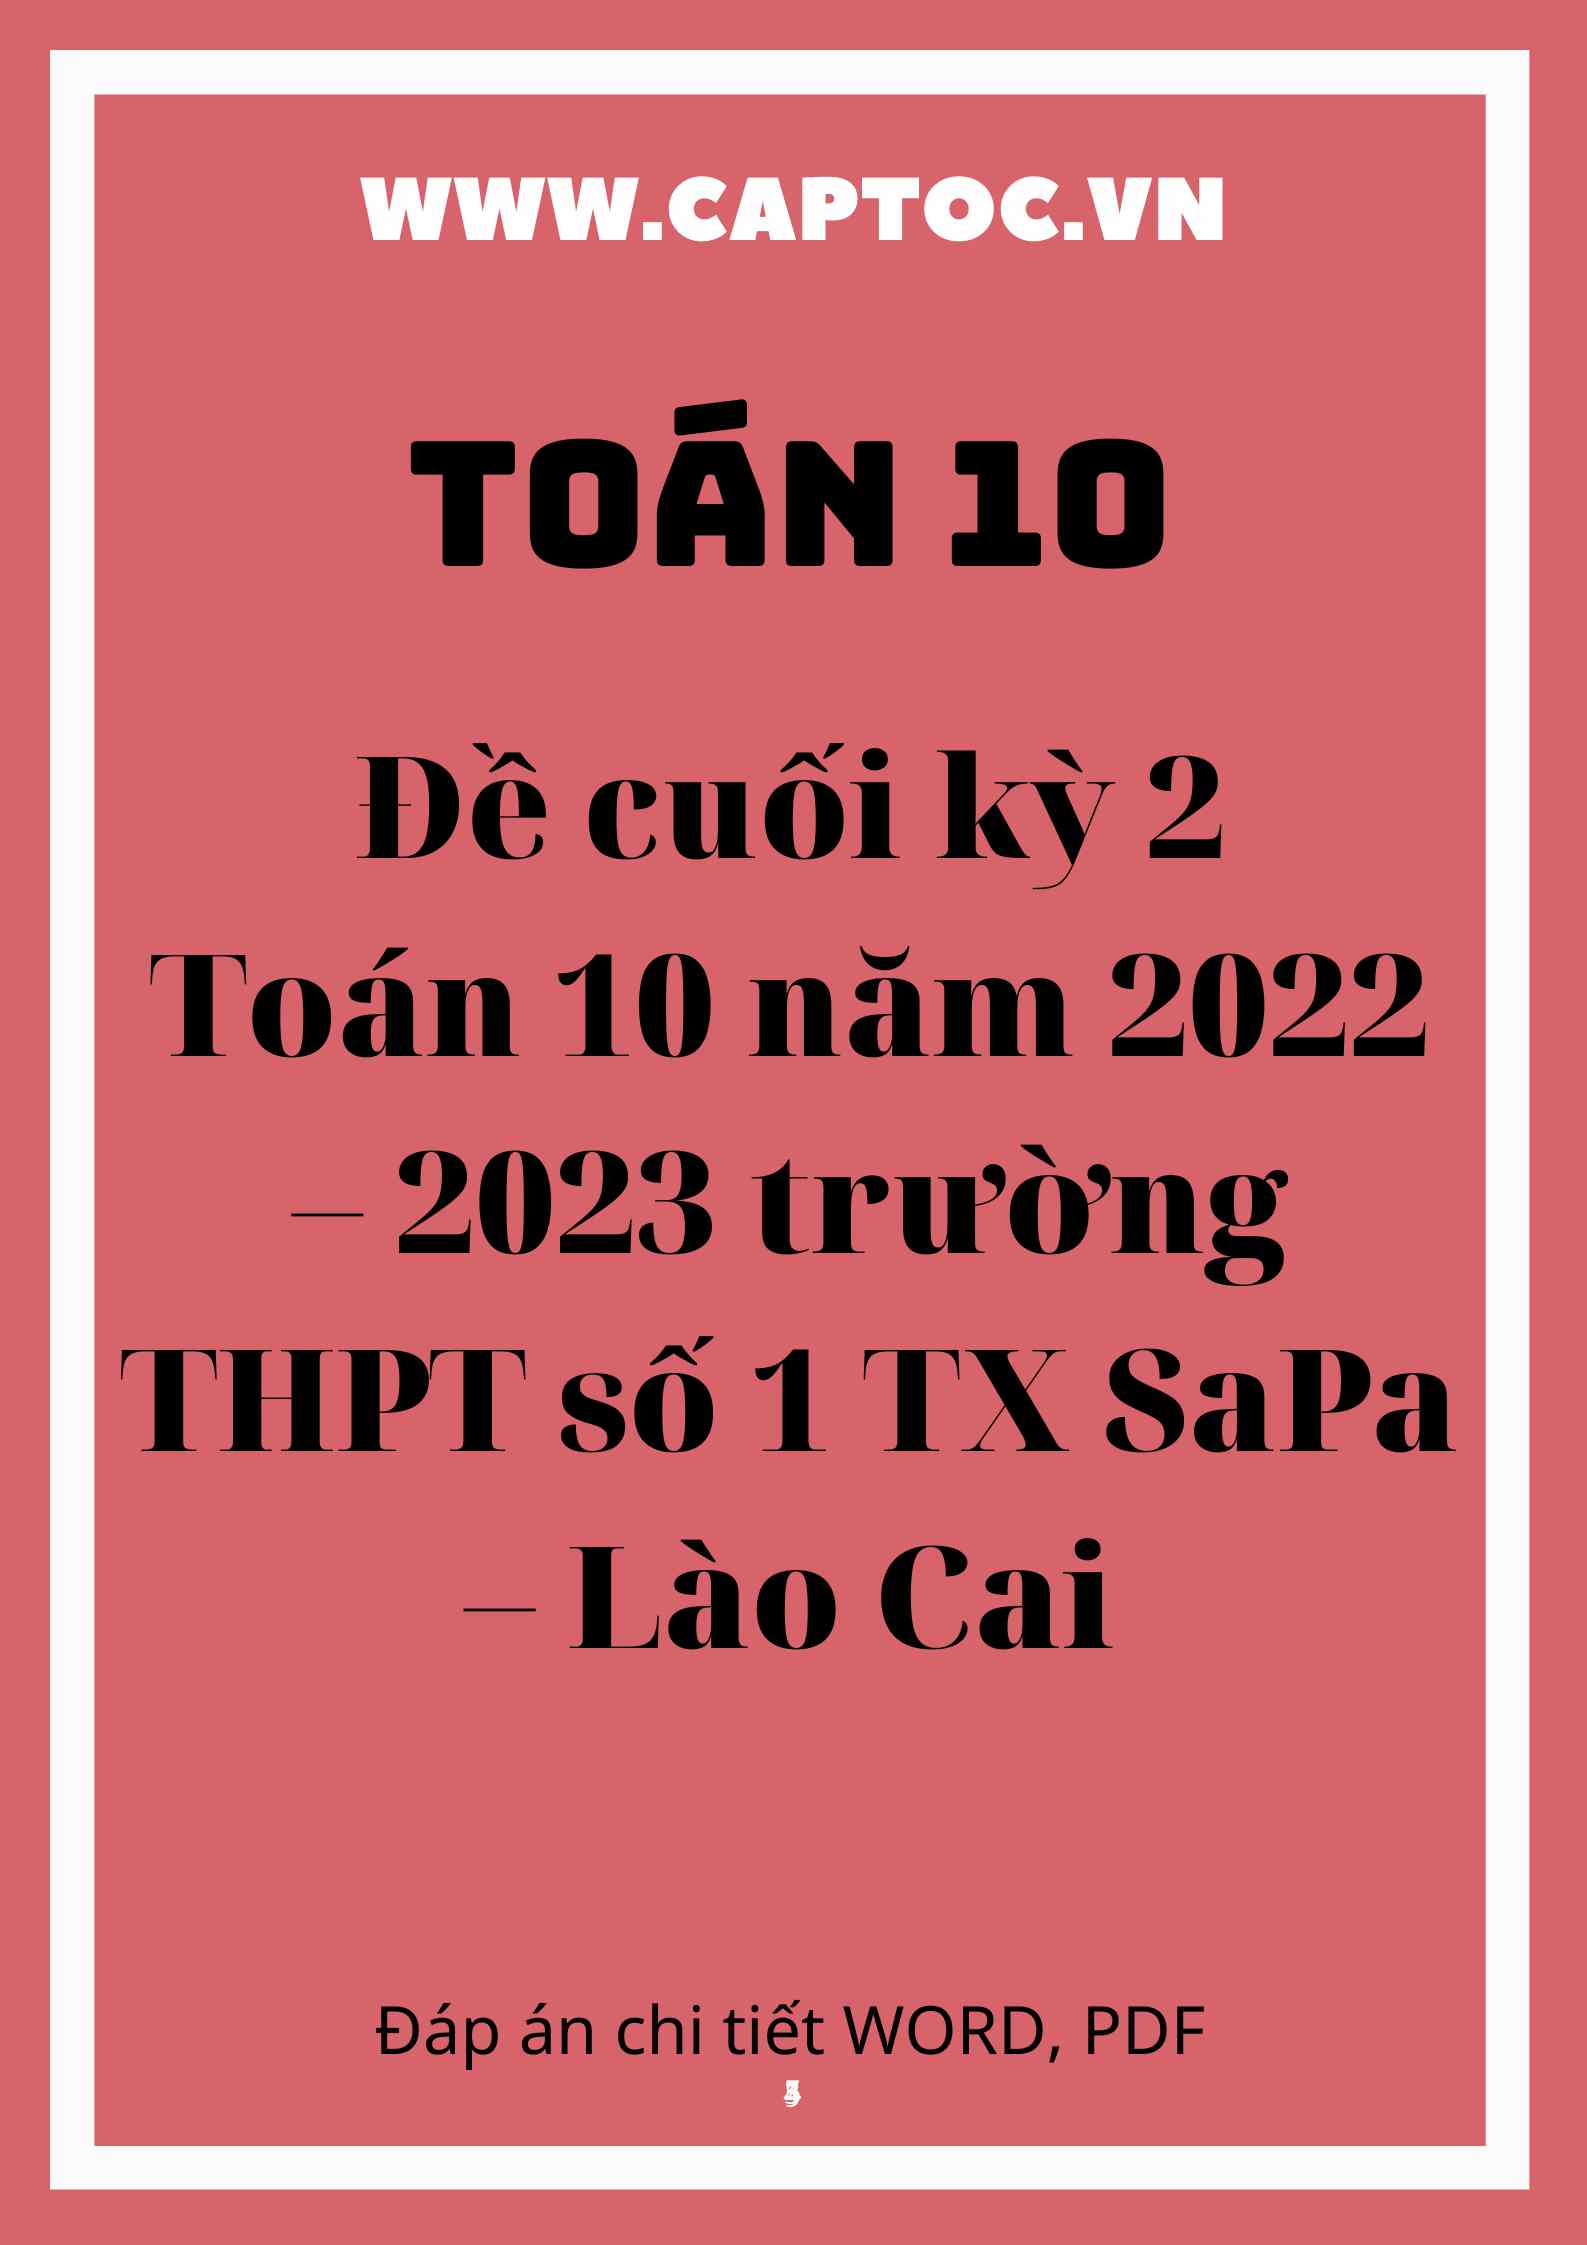 Đề cuối kỳ 2 Toán 10 năm 2022 – 2023 trường THPT số 1 TX Sa Pa – Lào Cai